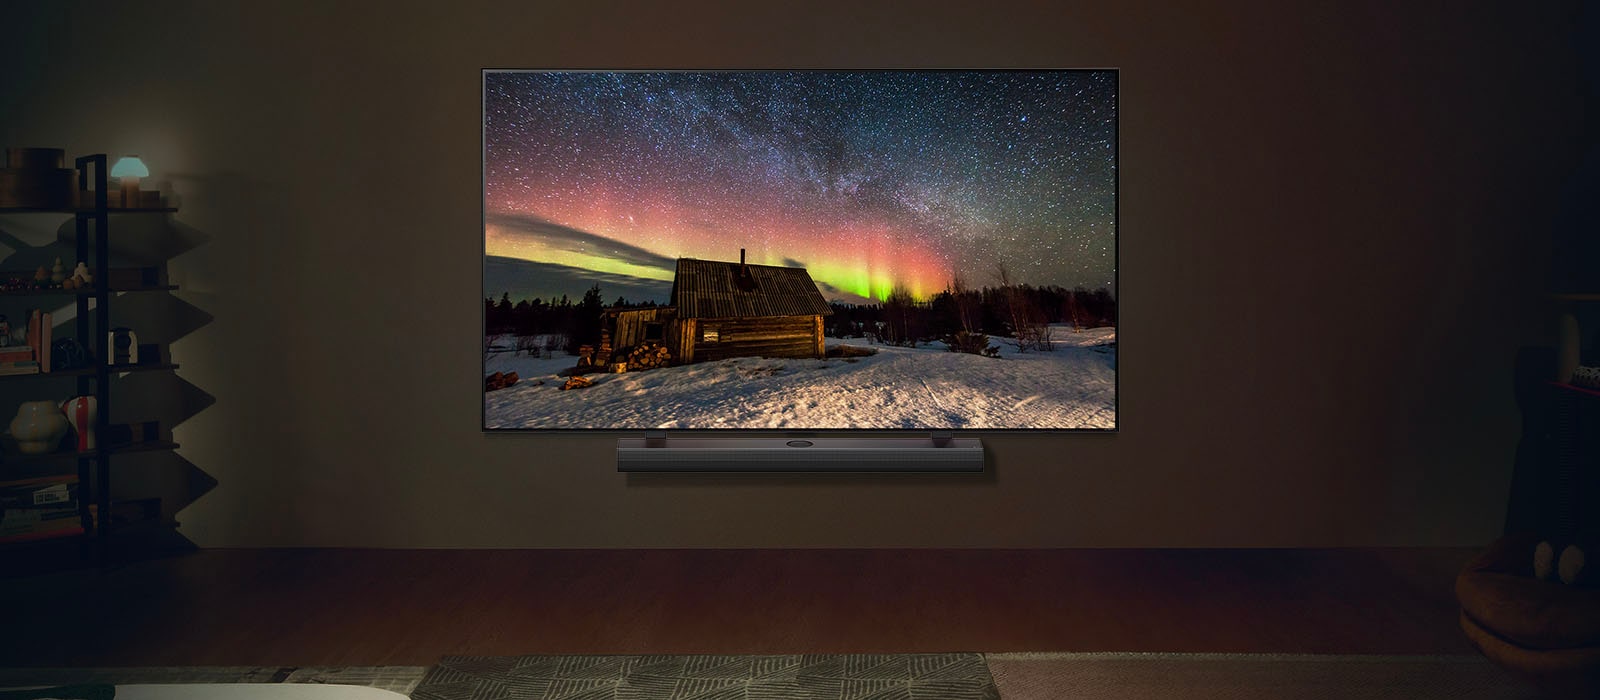 Slika na LG TV-u i LG Soundbar u modernom stambenom prostoru noću. Slika polarne svjetlosti na zaslonu prikazuje se s idealnom razinom svjetline.